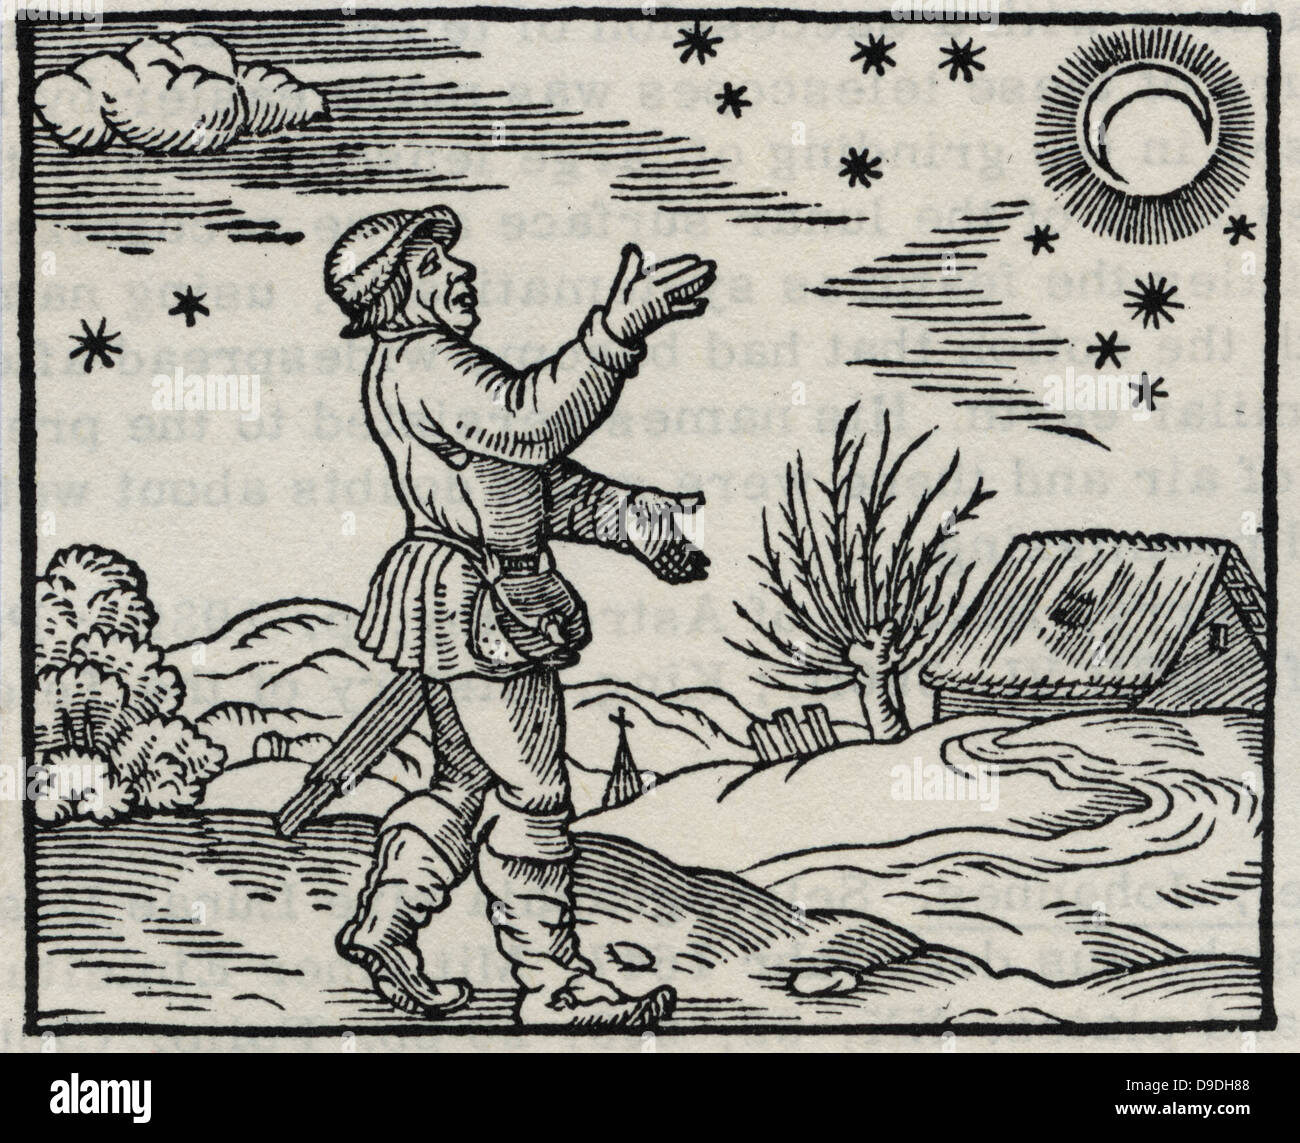 El agricultor o el paisano de la observación de la luna y las estrellas. A mediados del siglo XVI, la xilografía. Foto de stock